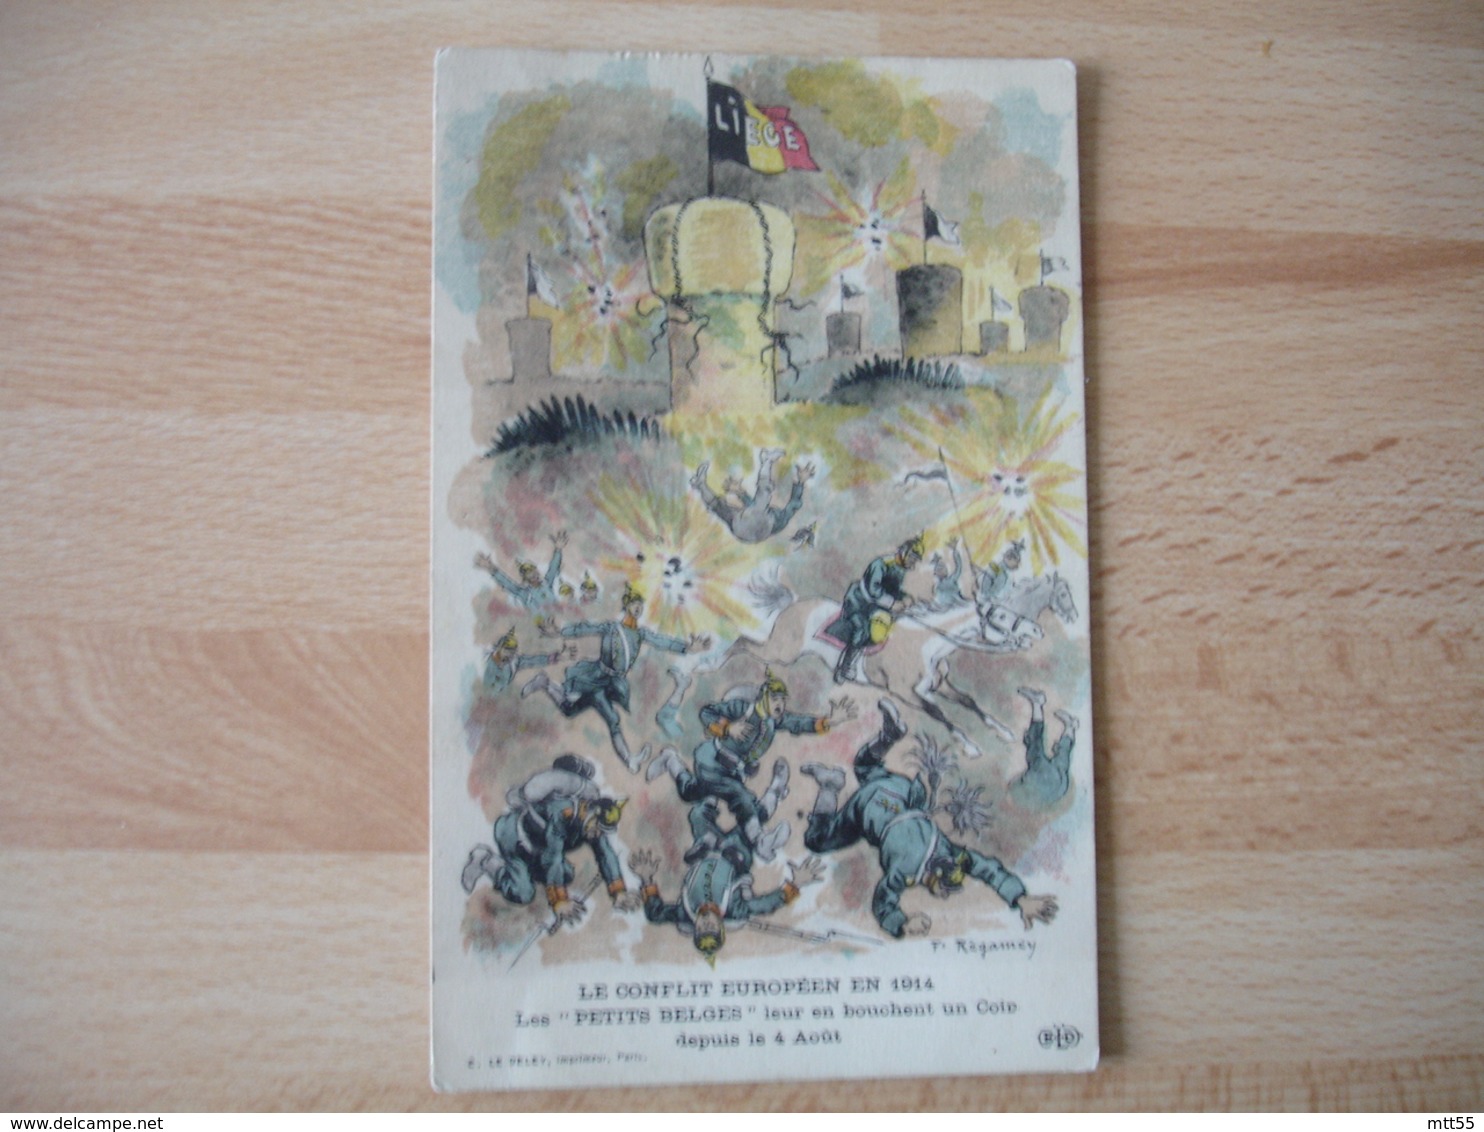 Les Petits Belges Leur En Bouche 1 Coin Depuis 4 Aout Guerre 14.18 Illustrateur  Ragamey - Guerre 1914-18